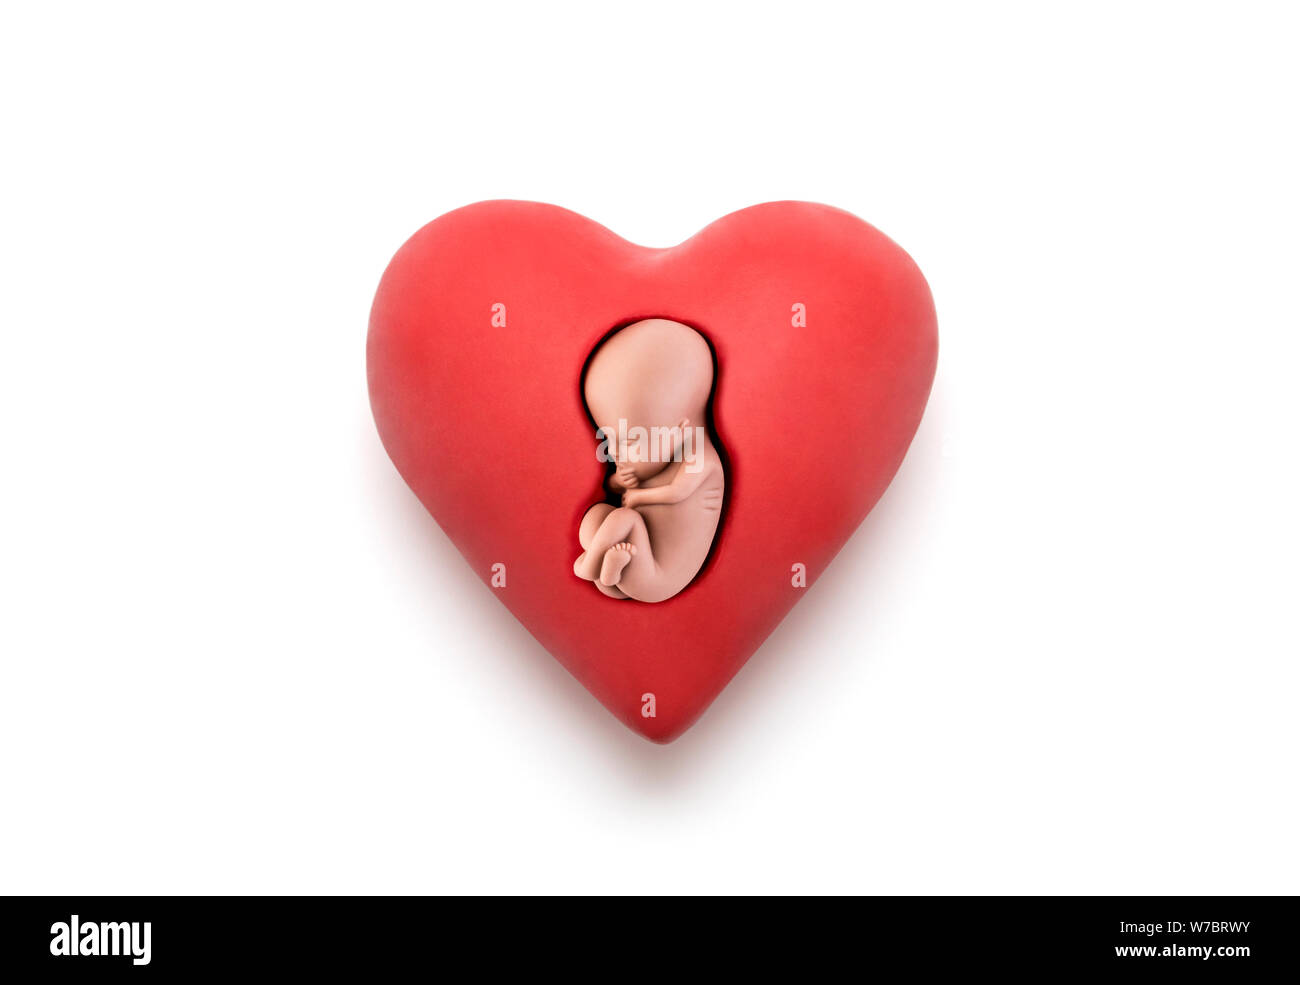 Les droits de l'embryon en cœur rouge sur fond blanc avec clipping path Banque D'Images